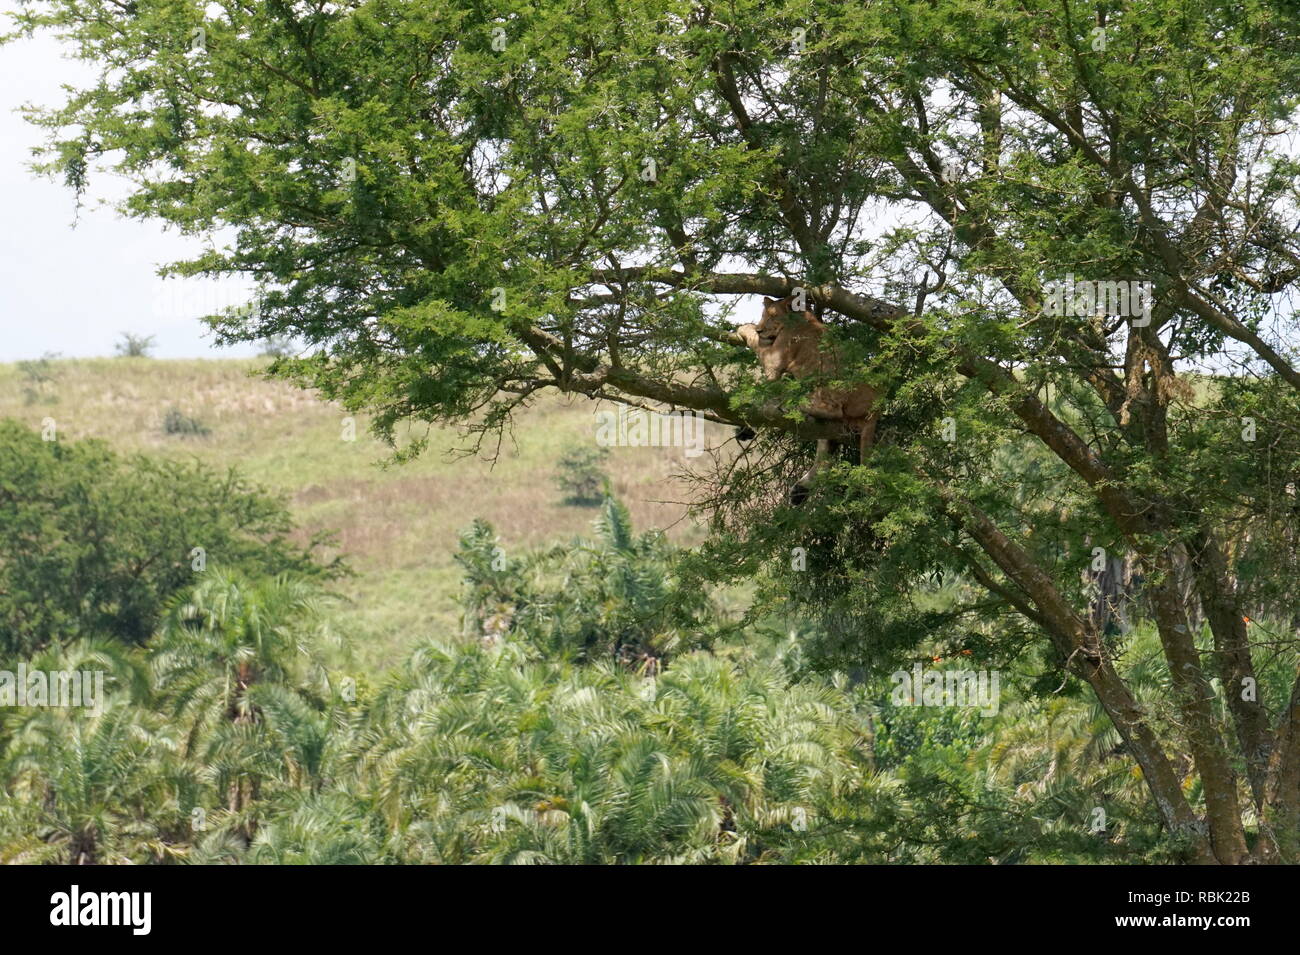 Tree-climbing lionne, Parc national Queen Elizabeth, en Ouganda Banque D'Images